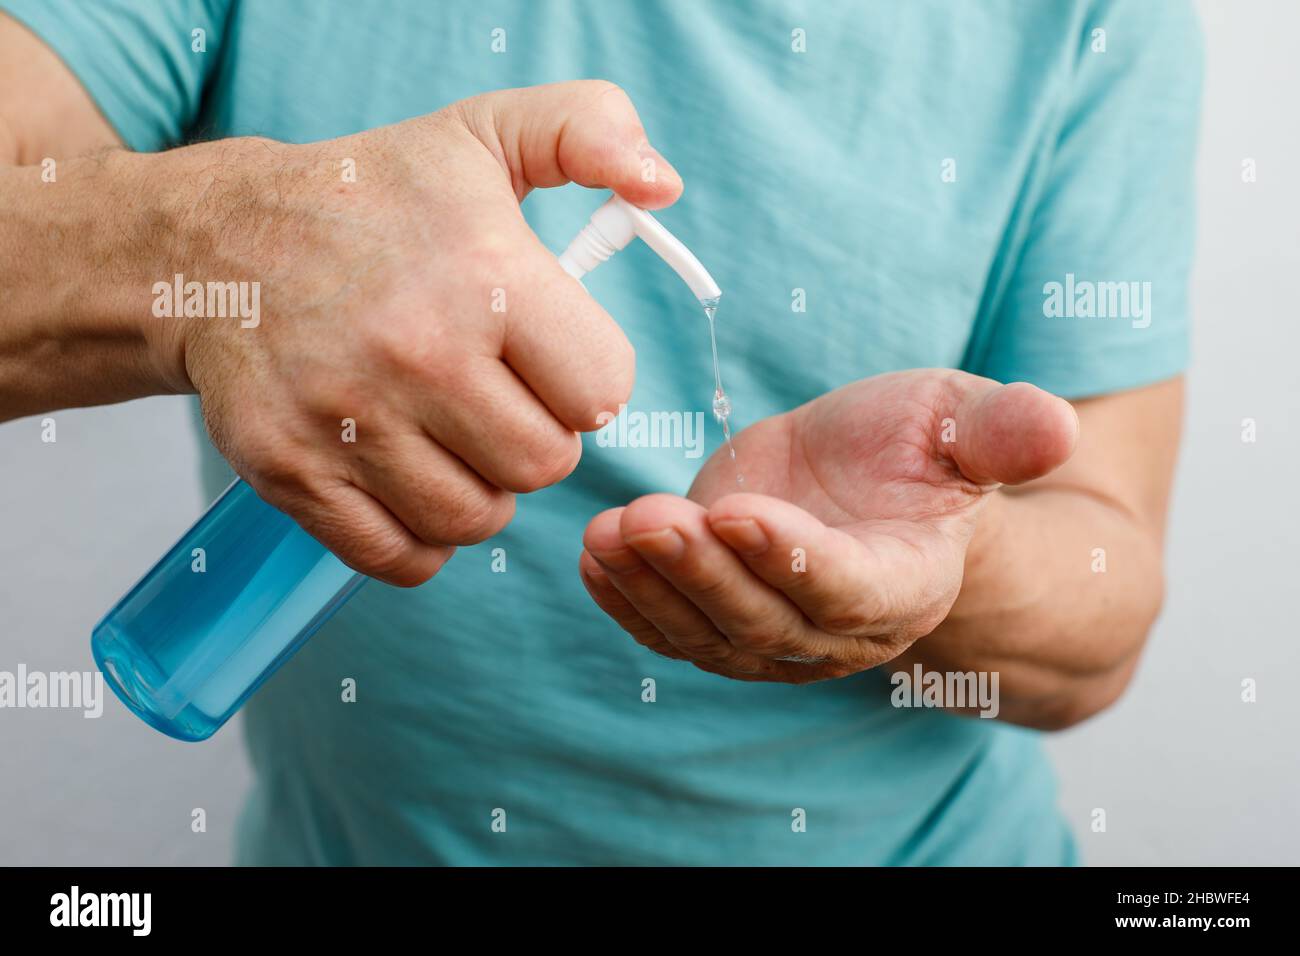 Homme utilisant un désinfectant pour les mains.Assainisseur à la maison.Hygiène personnelle pendant la pandémie de coronavirus ou de COVID-19 Banque D'Images